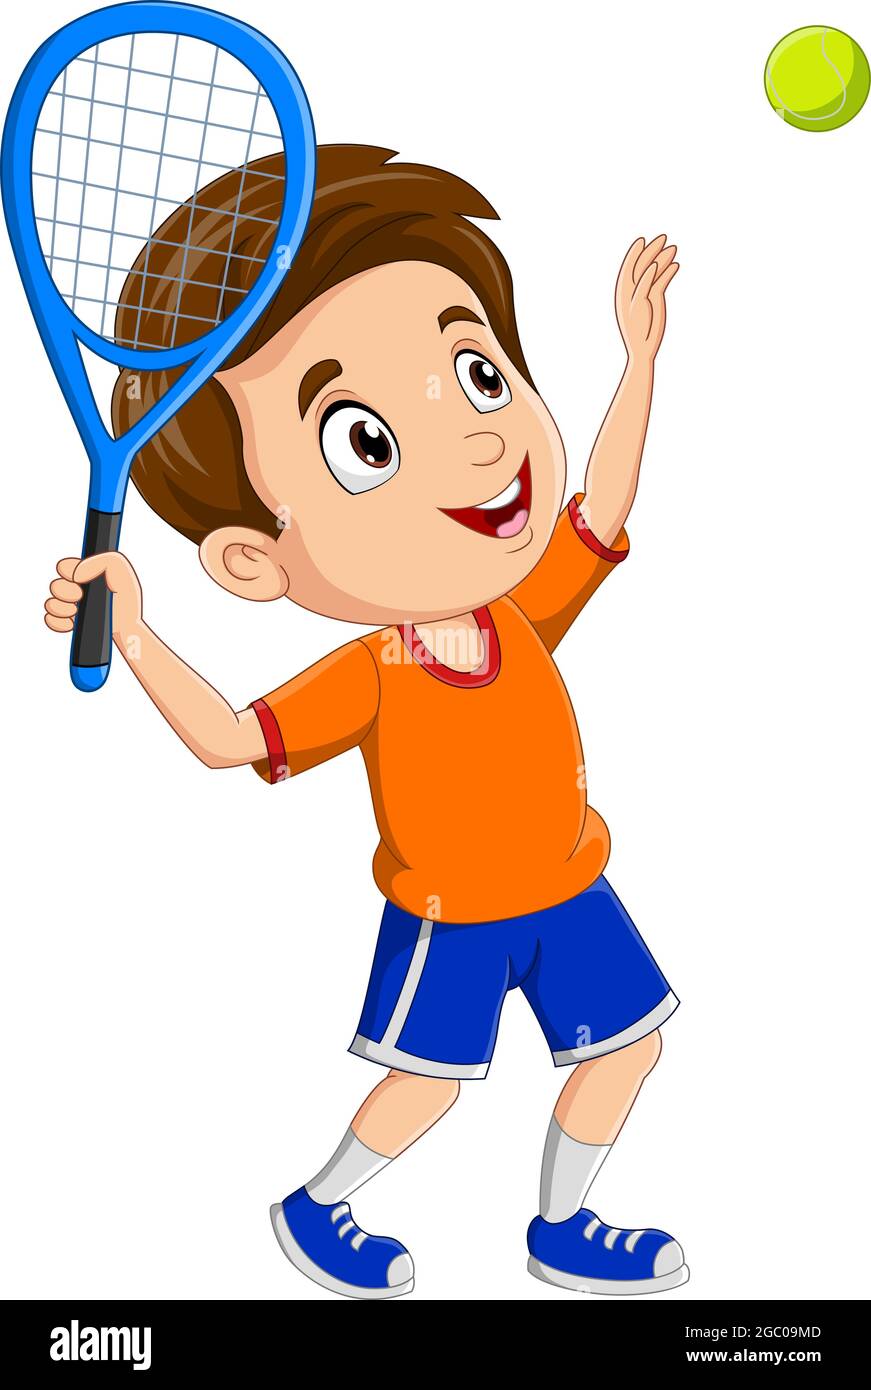 Cartoon little boy playing a tennis Stock Vector Image & Art - Alamy